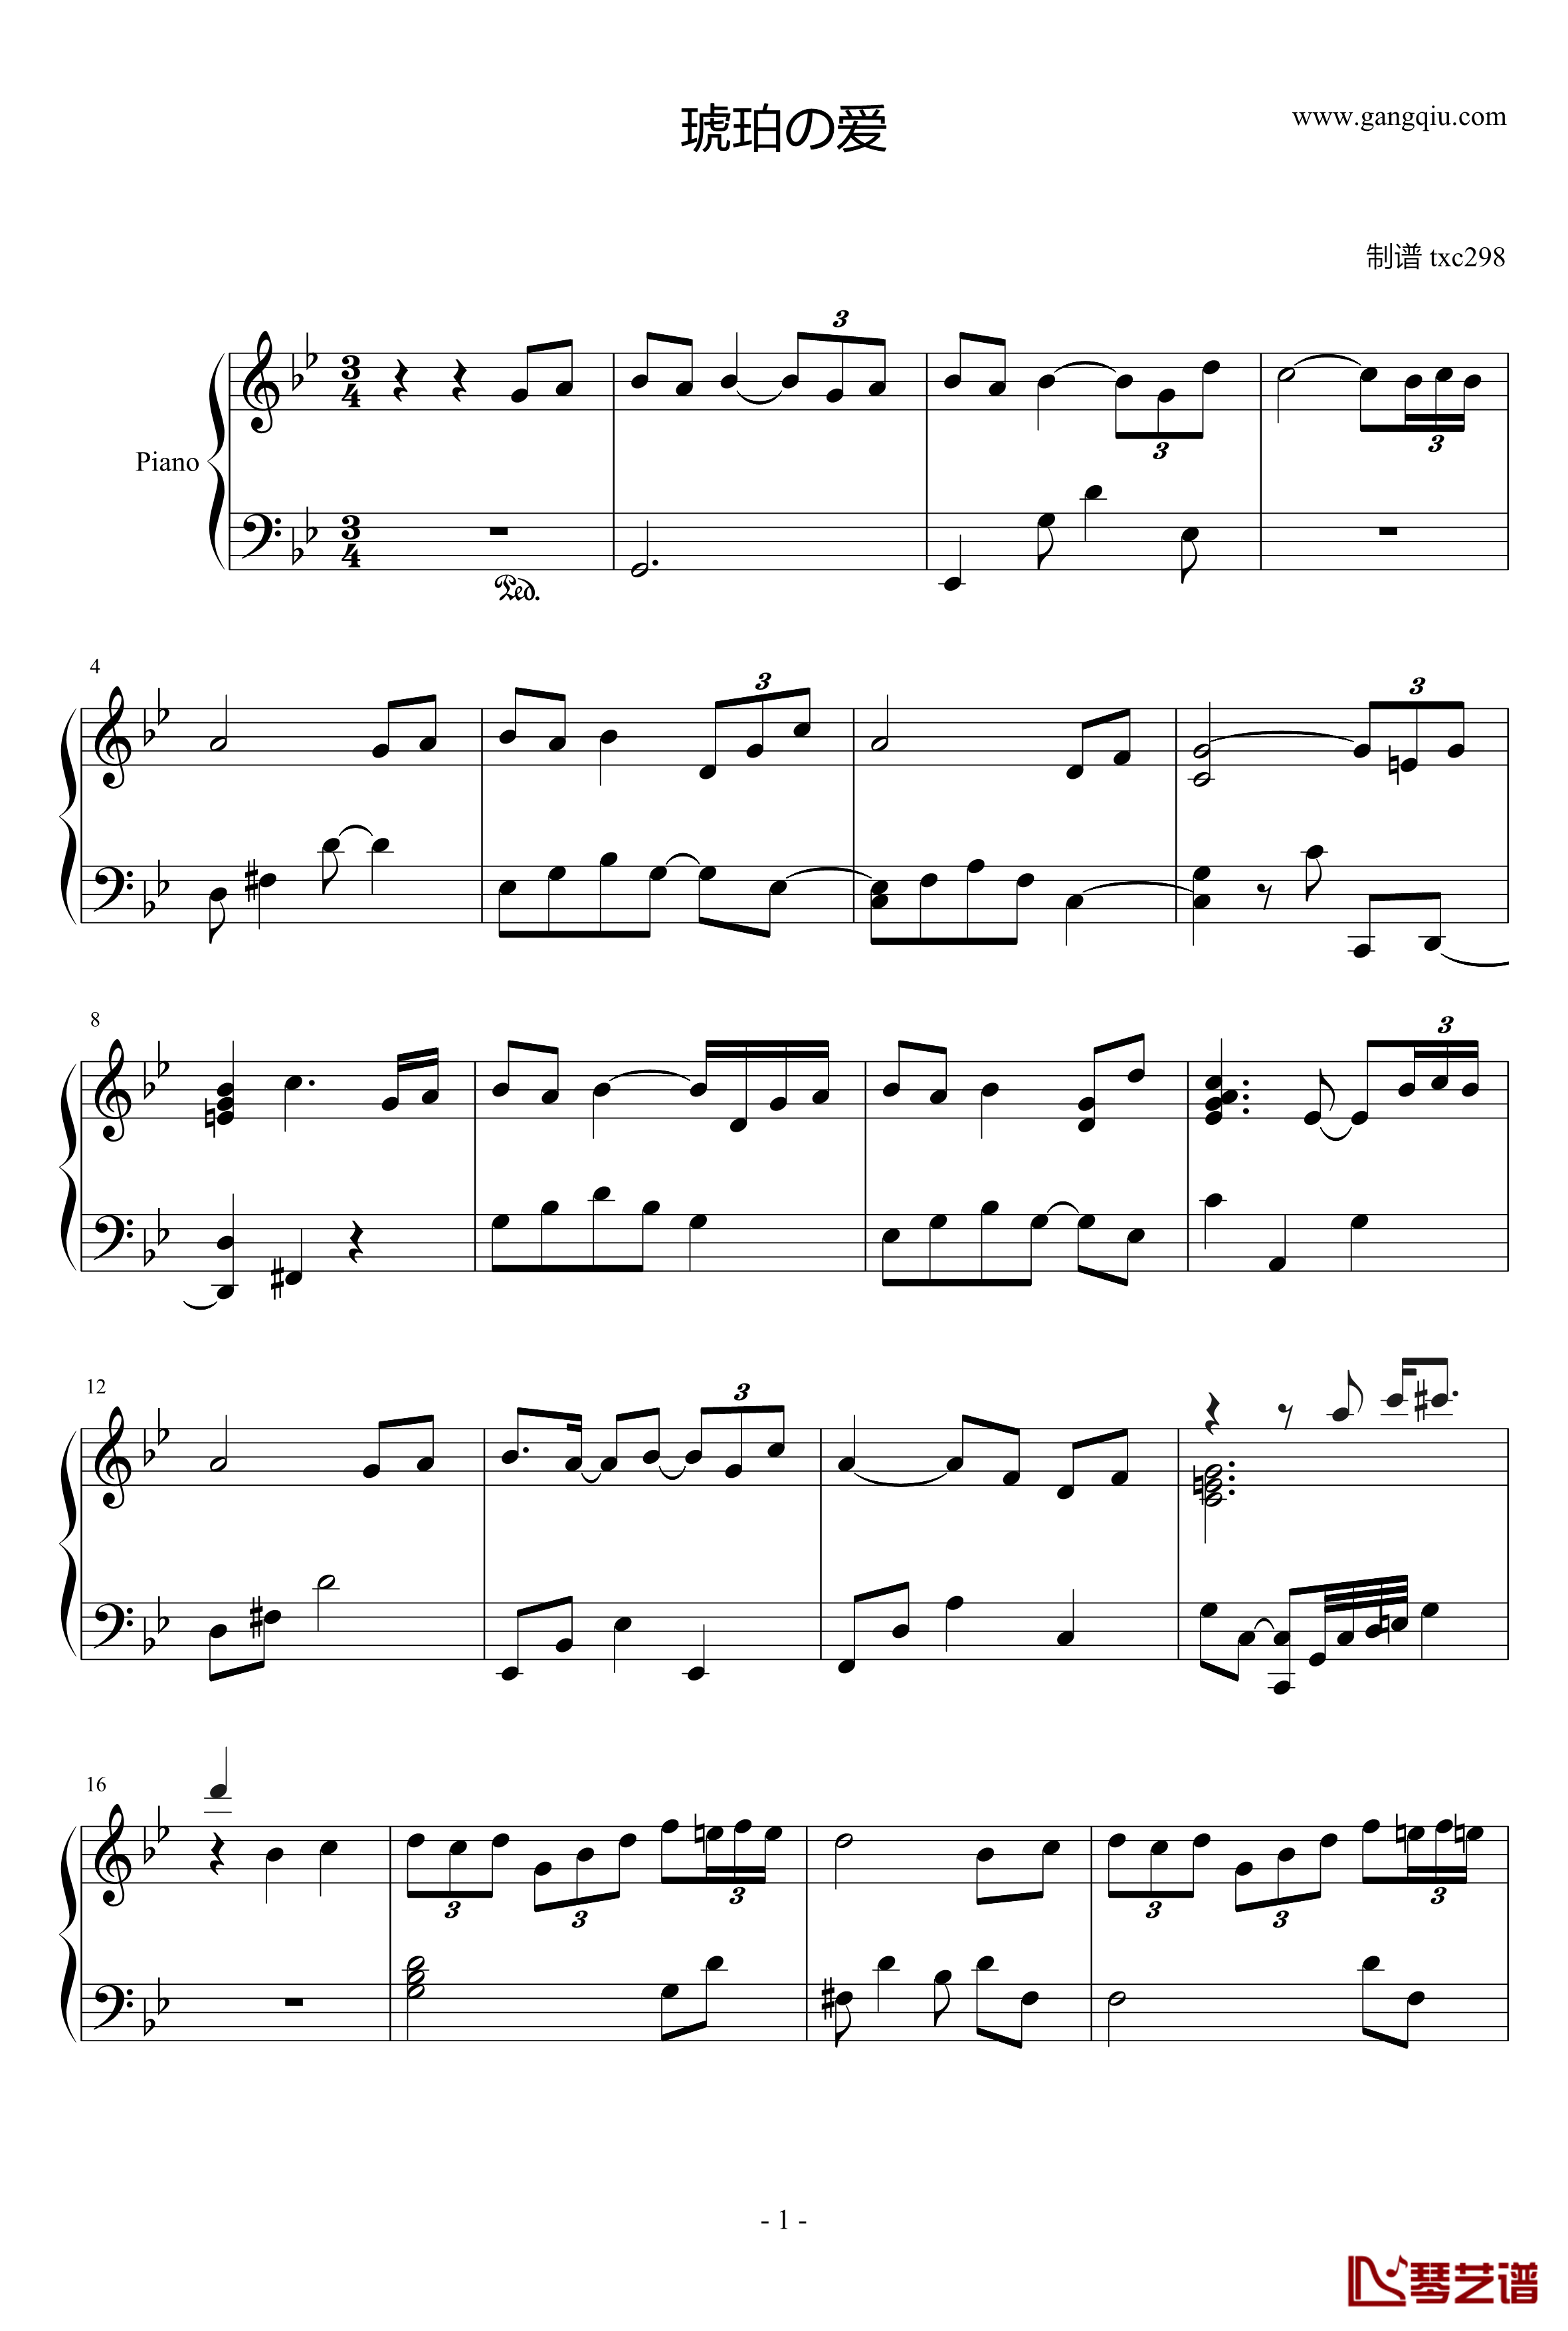 琥珀の爱钢琴谱-空の轨迹背景音乐-空之轨迹1